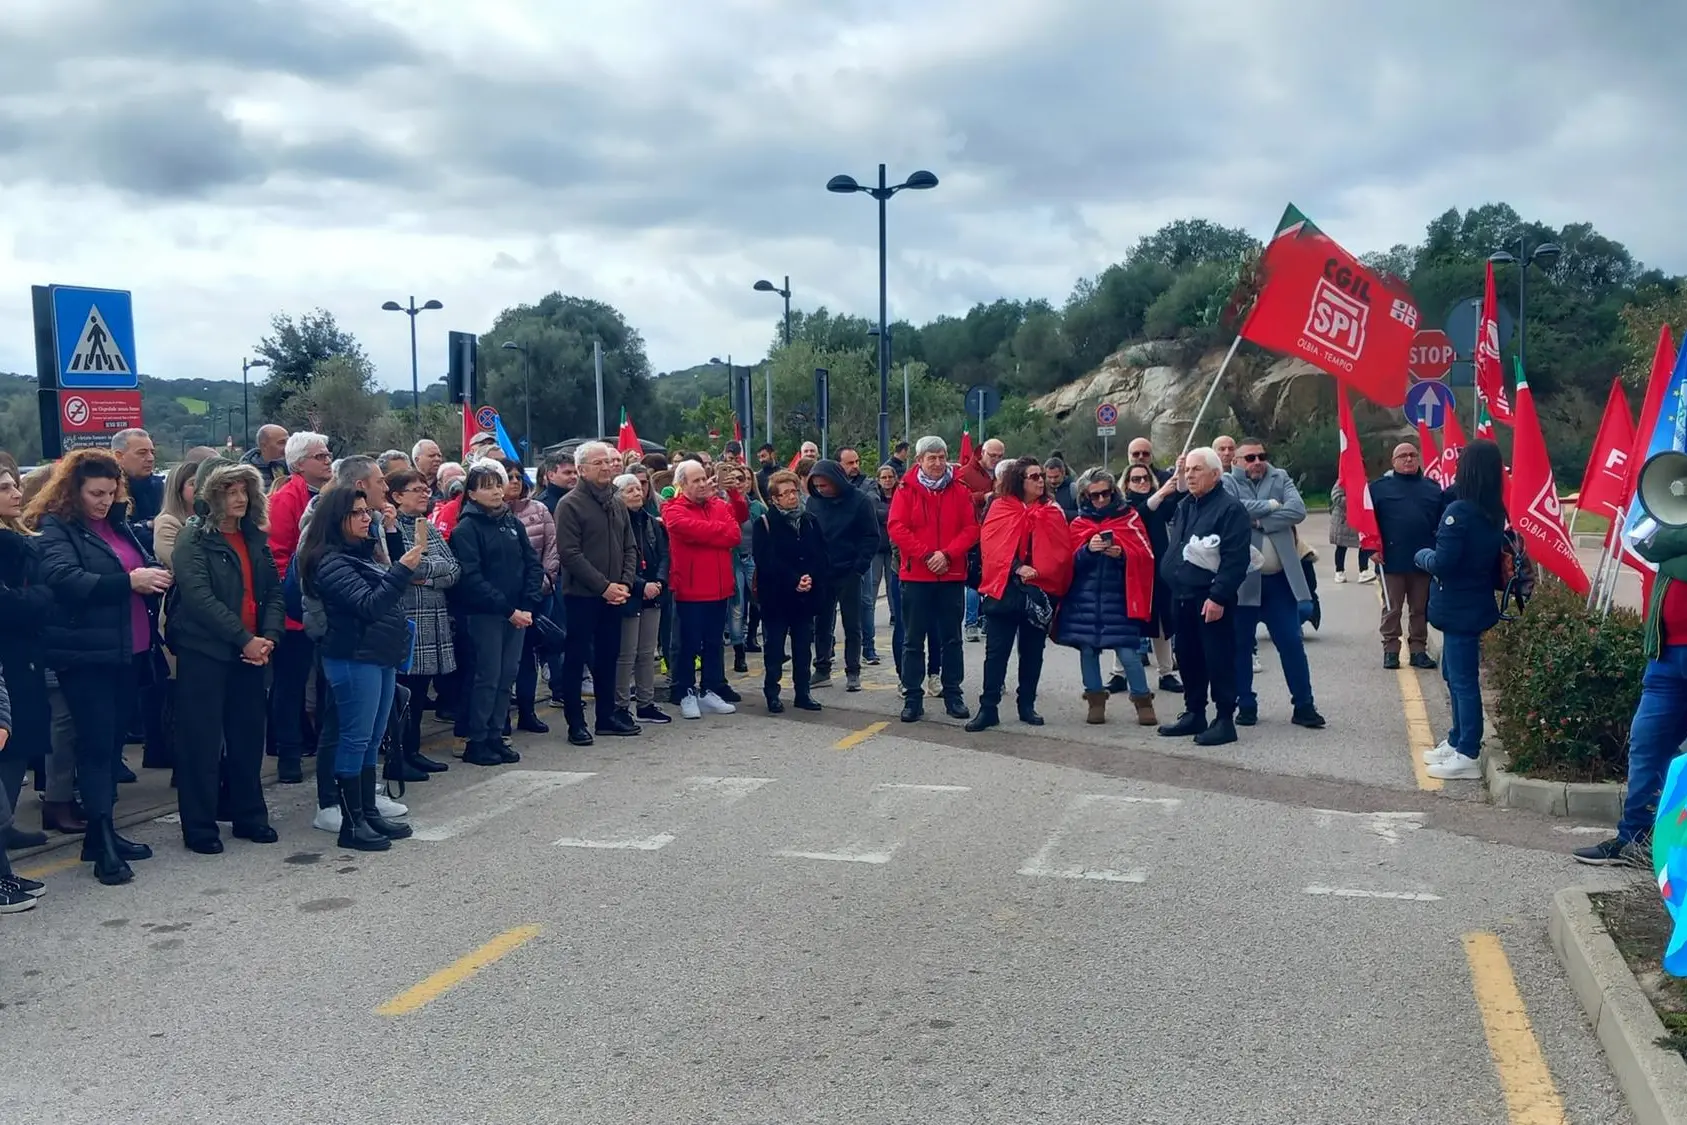 La protesta a Olbia (foto Busia)